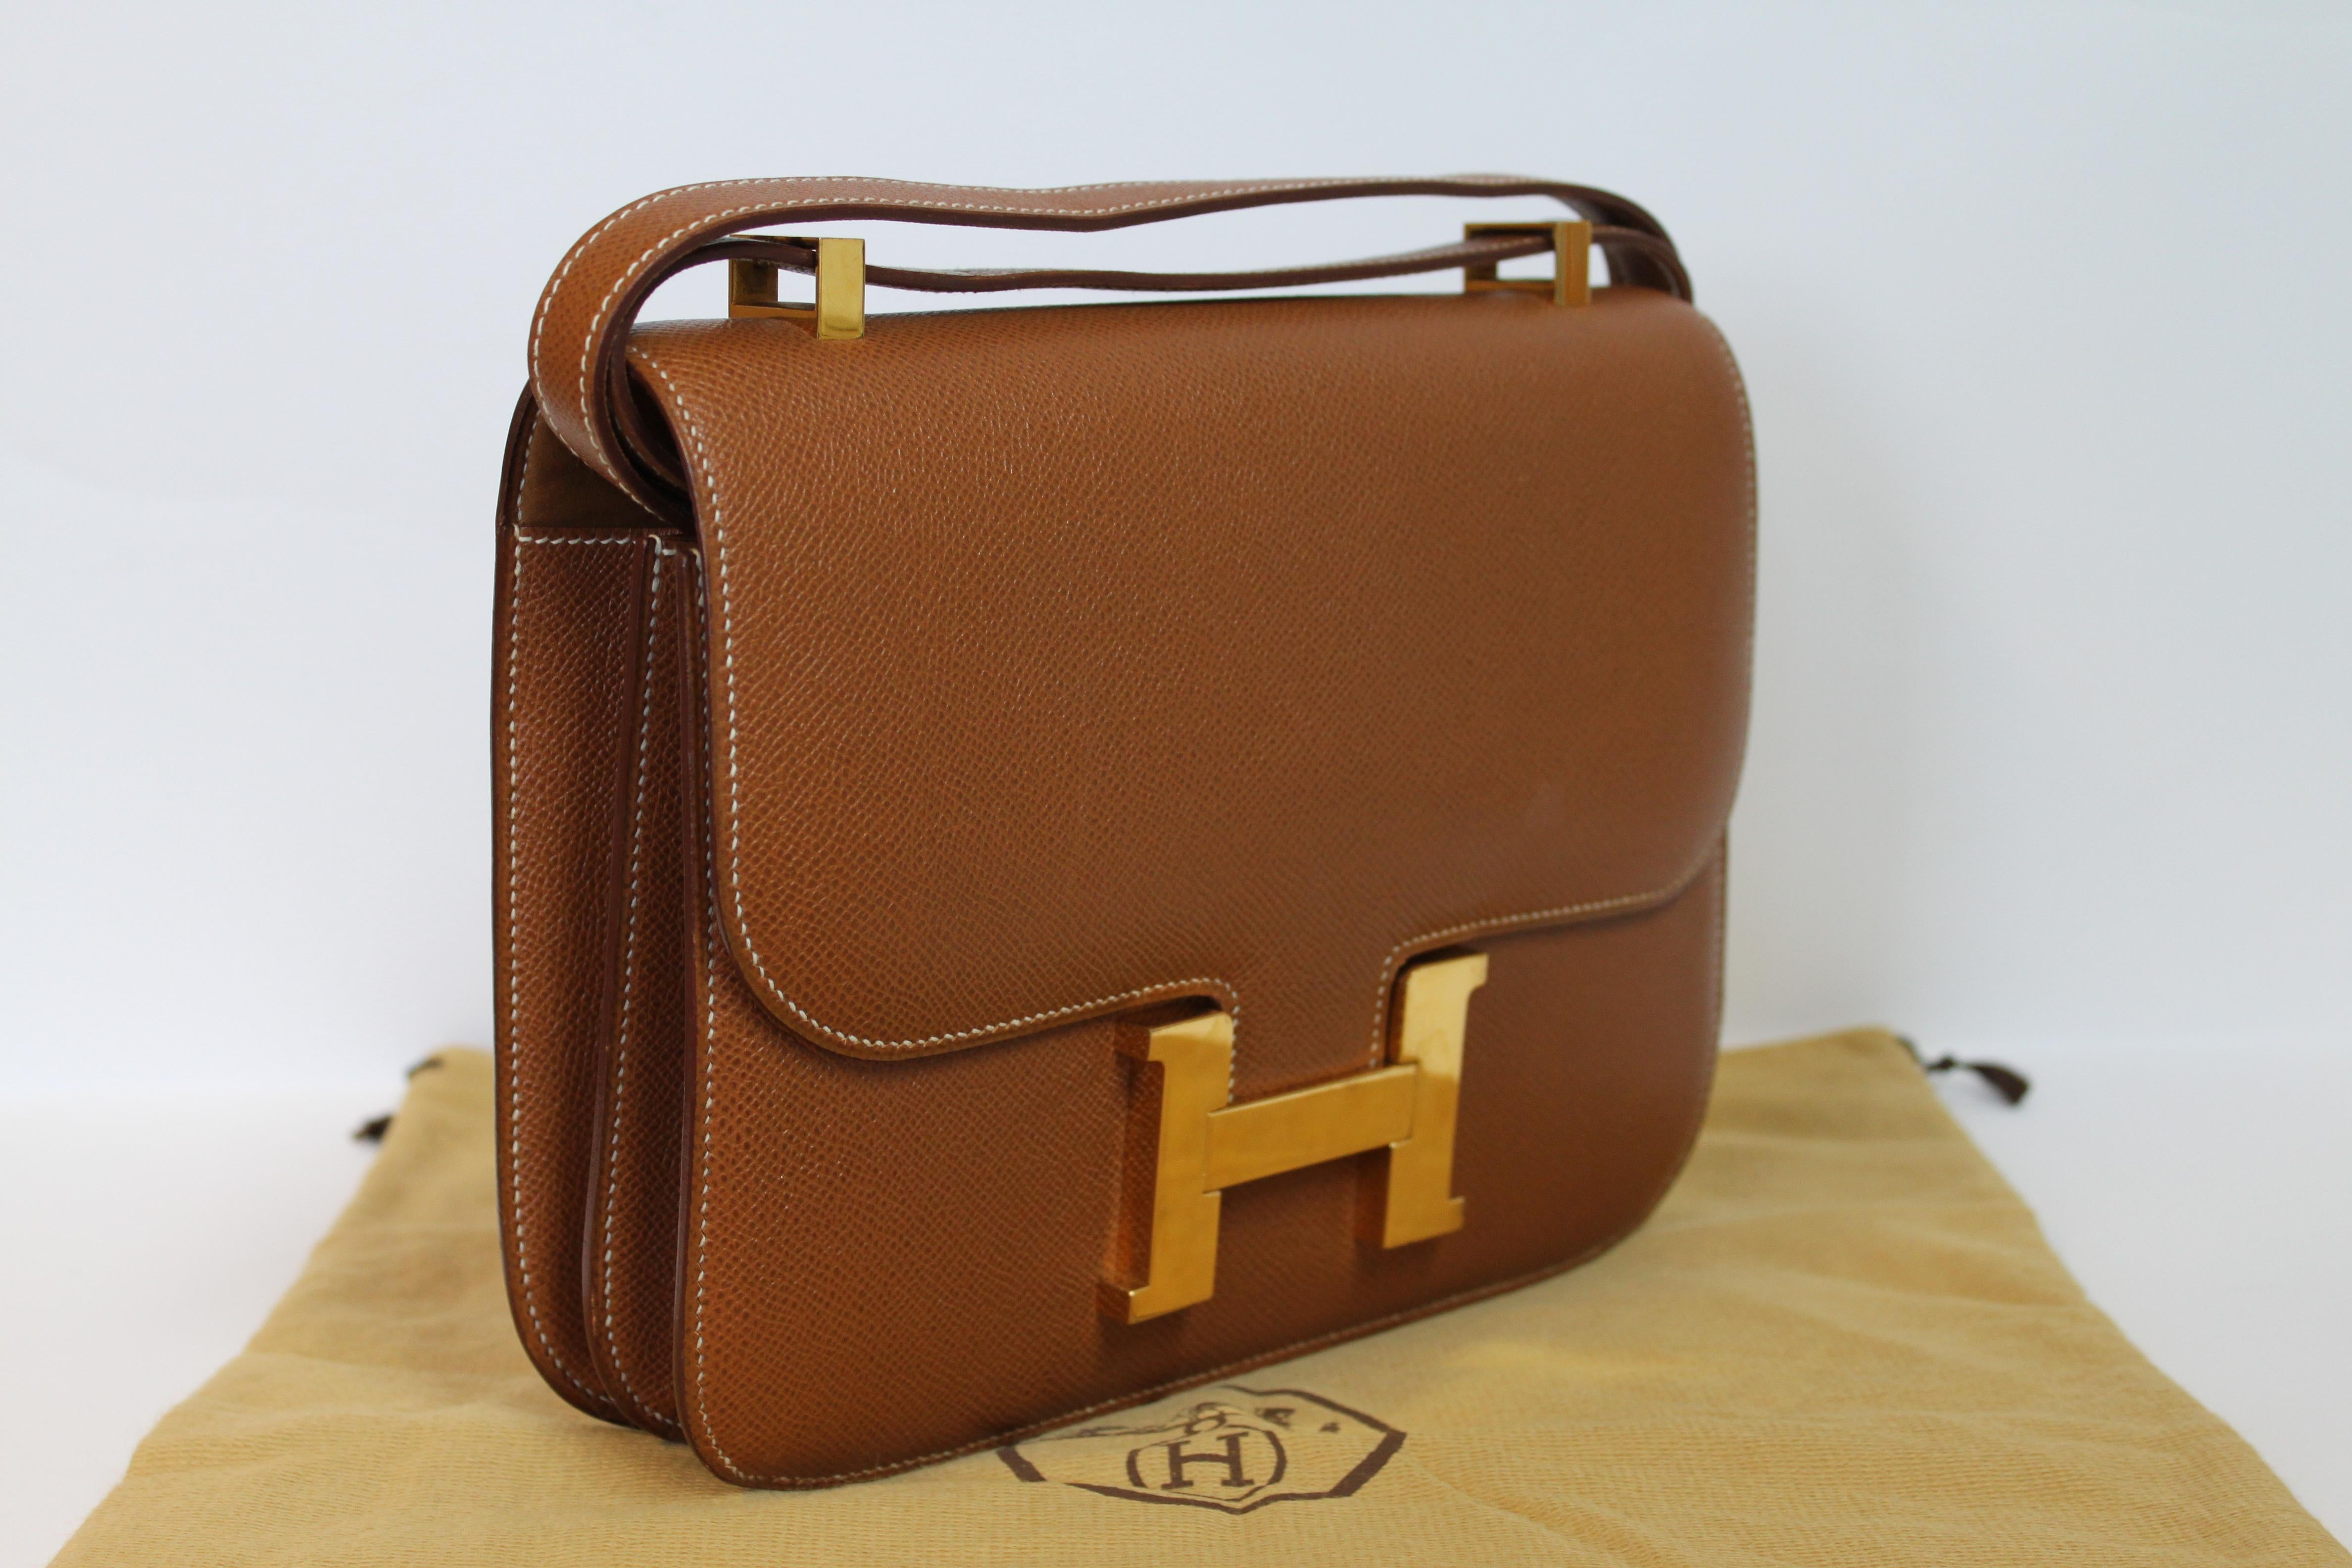 Hermes Constance 24 Shoulder Bag brown/tan epsom leather with gold Hardware For Sale 1